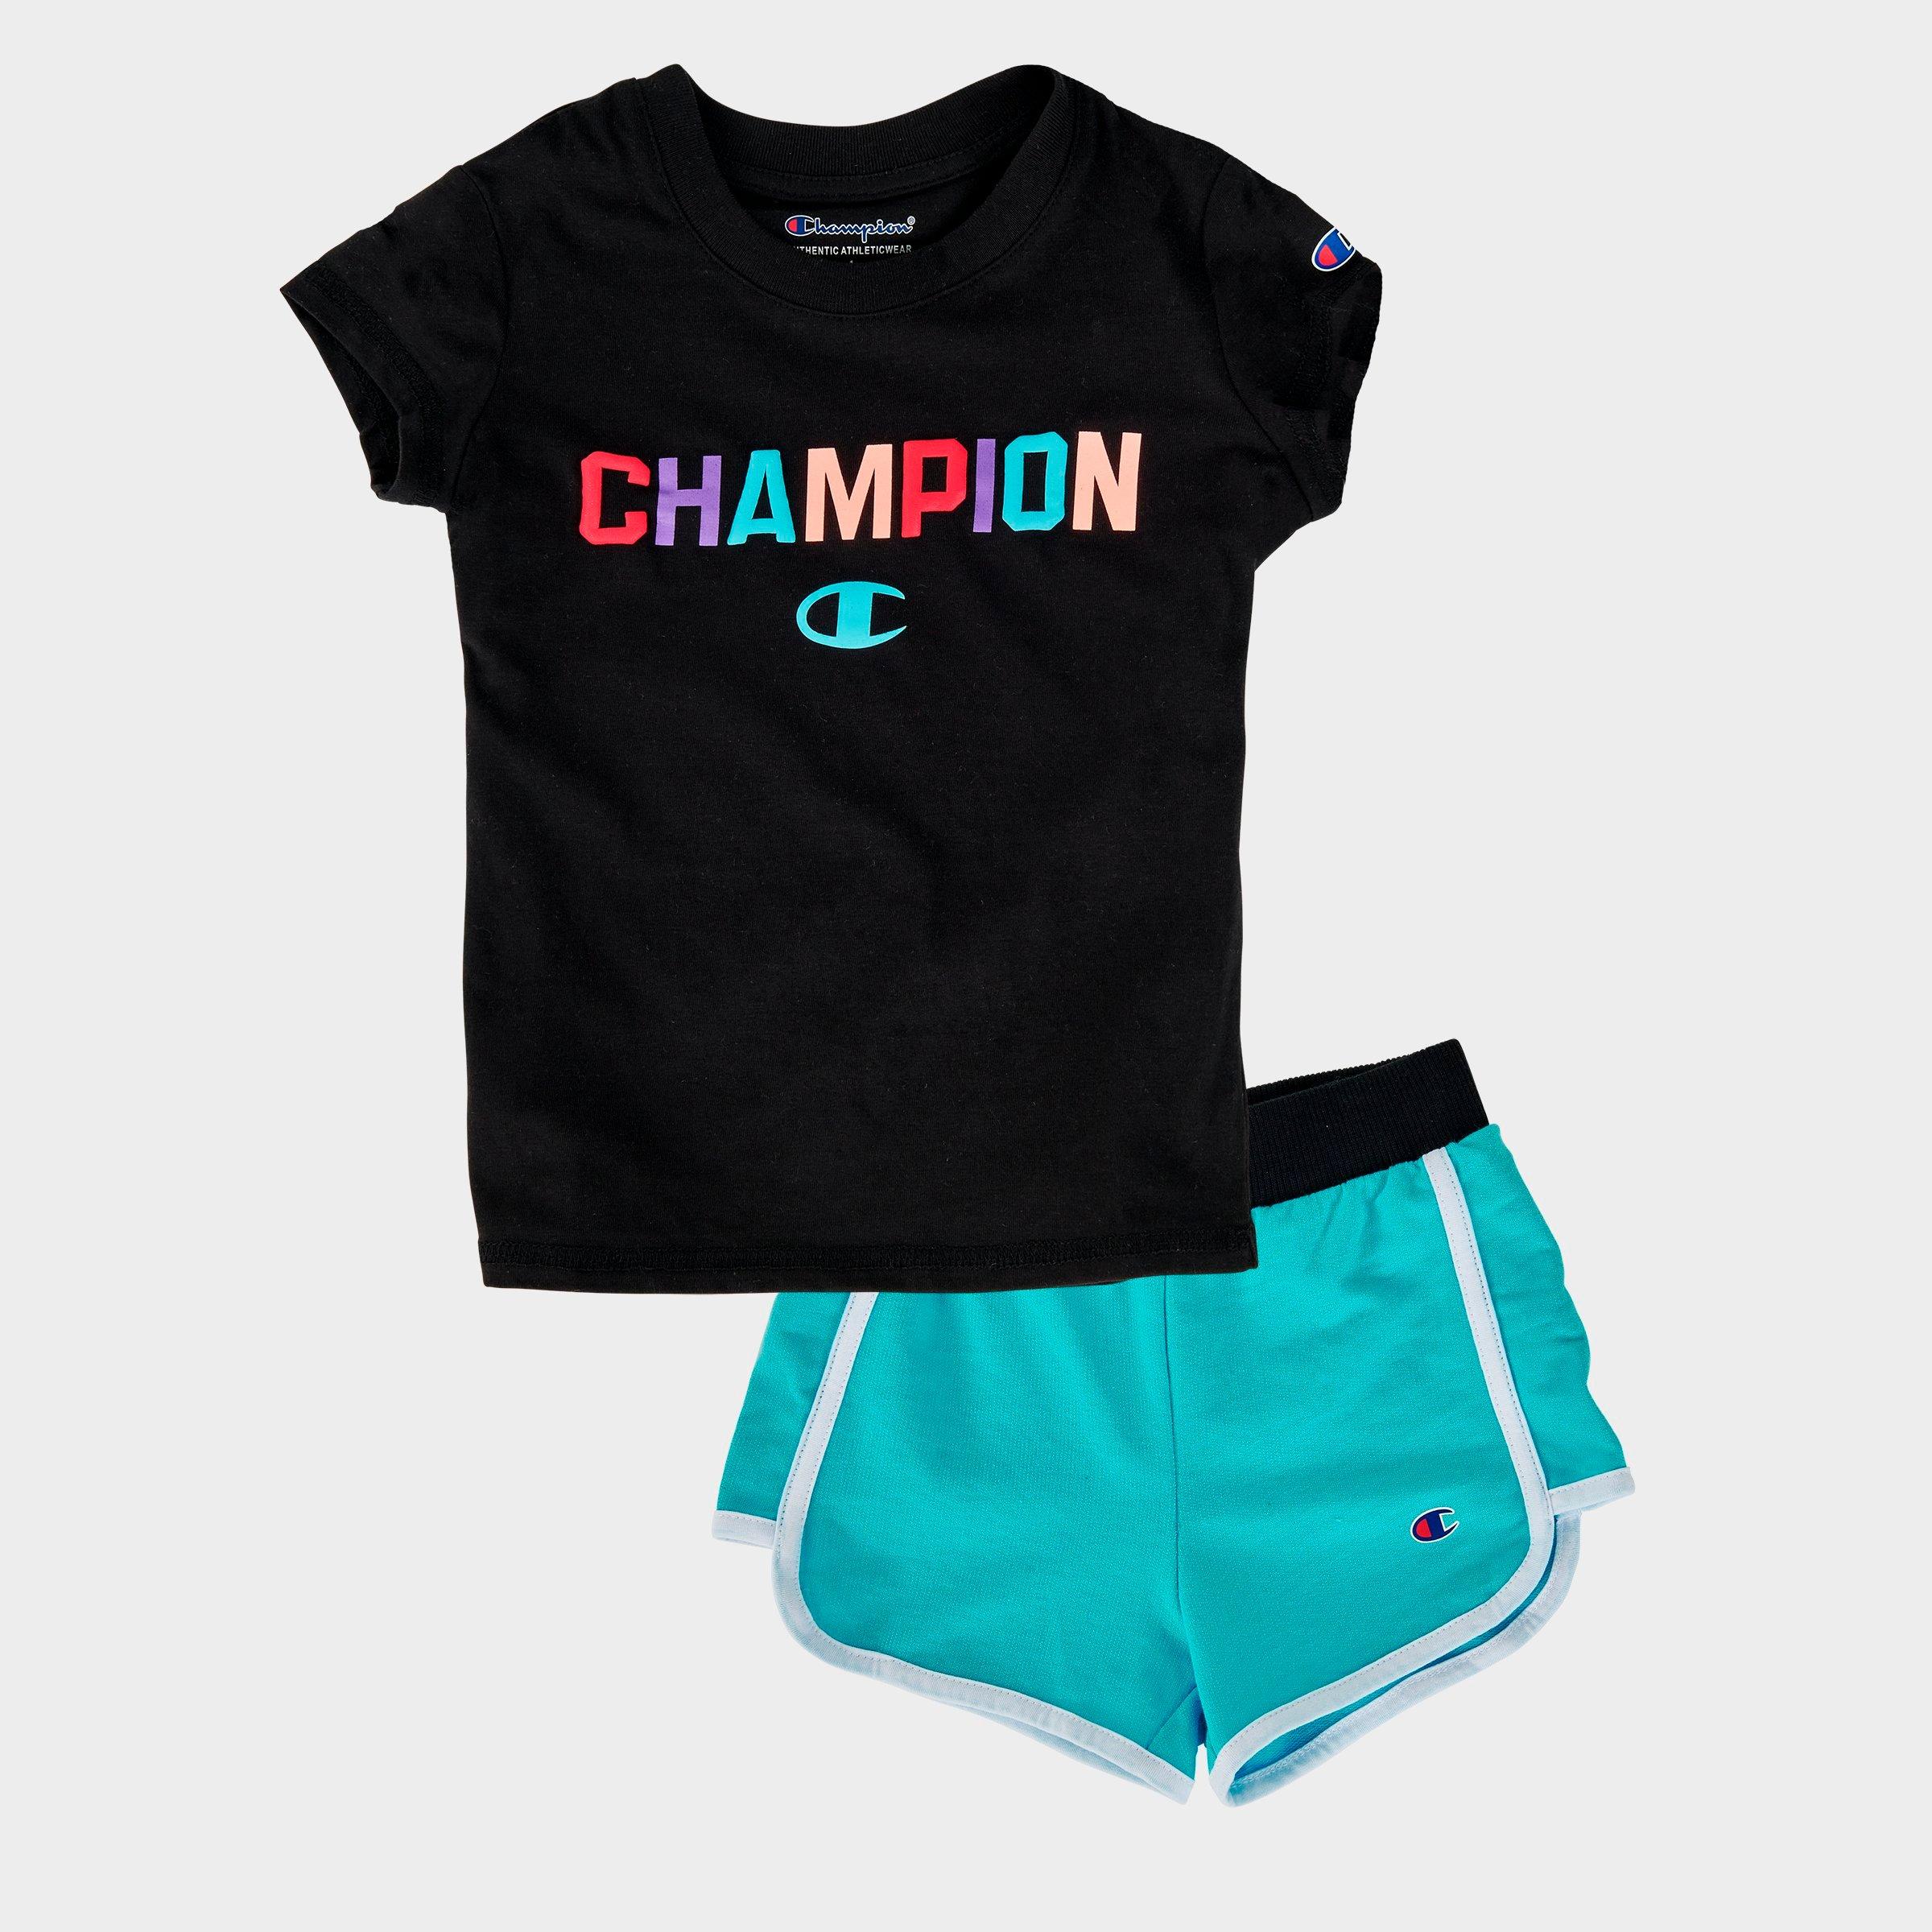 champion shirt and shorts set